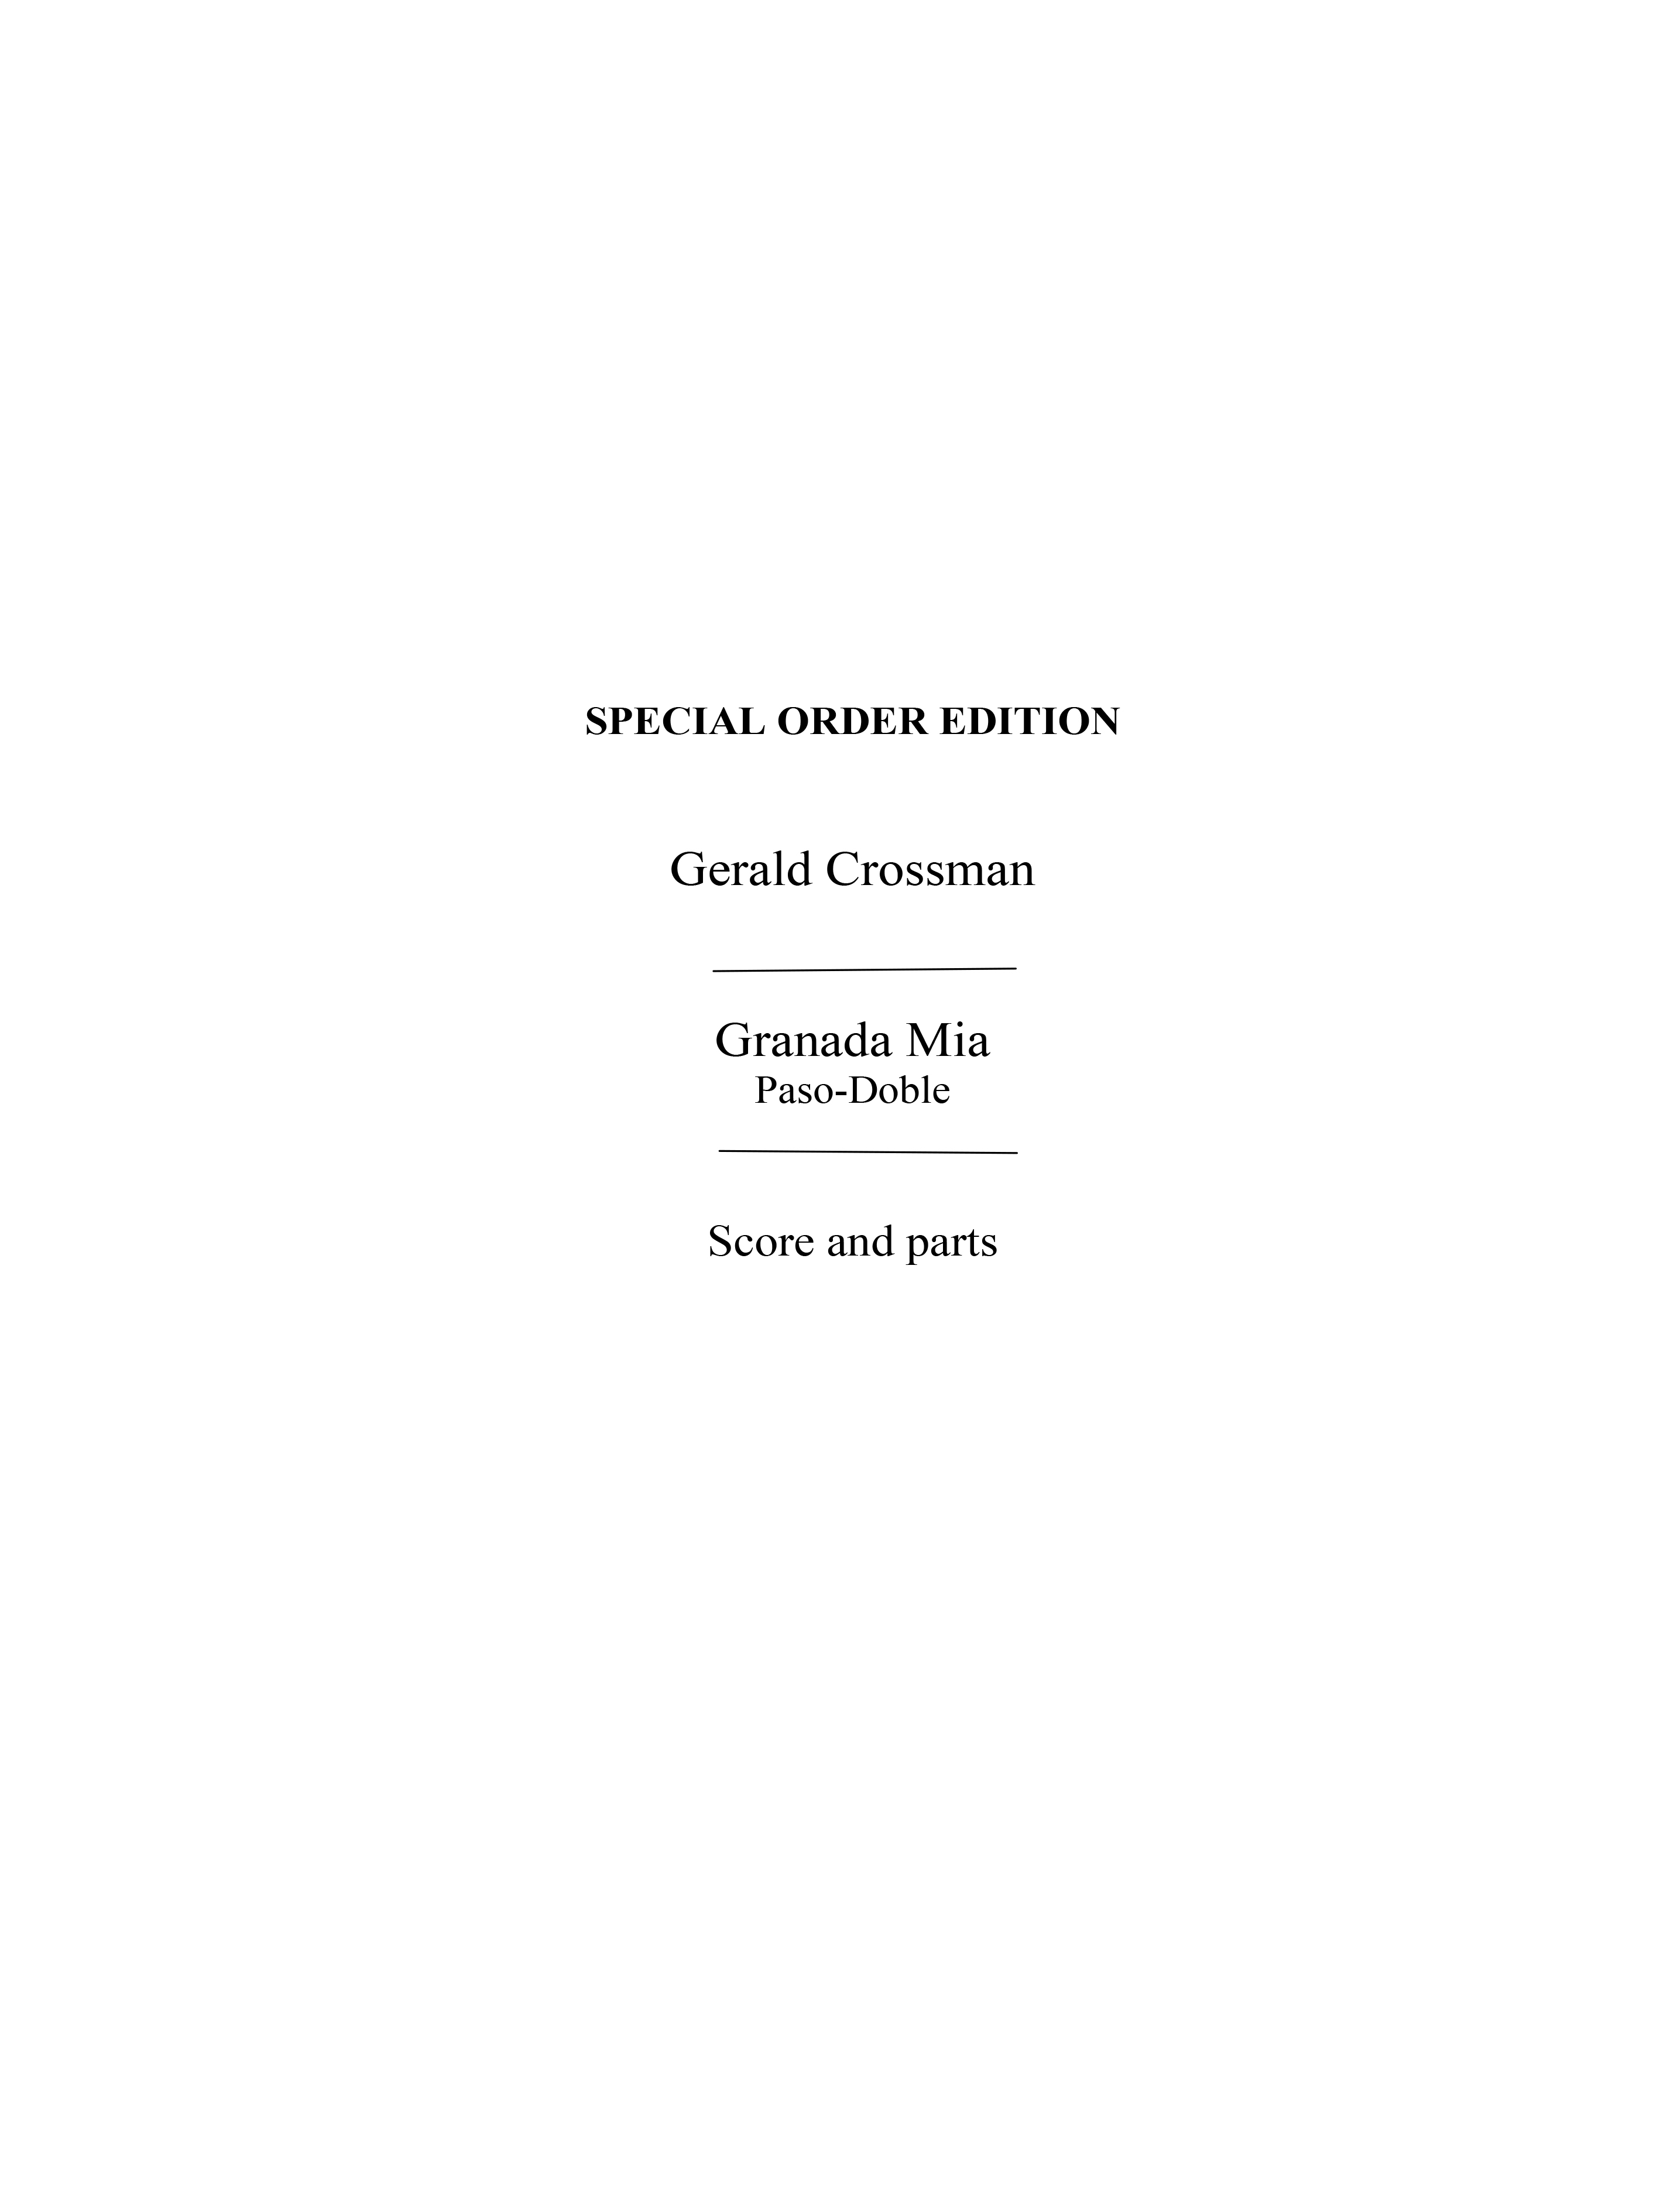 Crossman, G Granada Mia Paso-doble (Charrosin) Orch Pf Sc/Pts